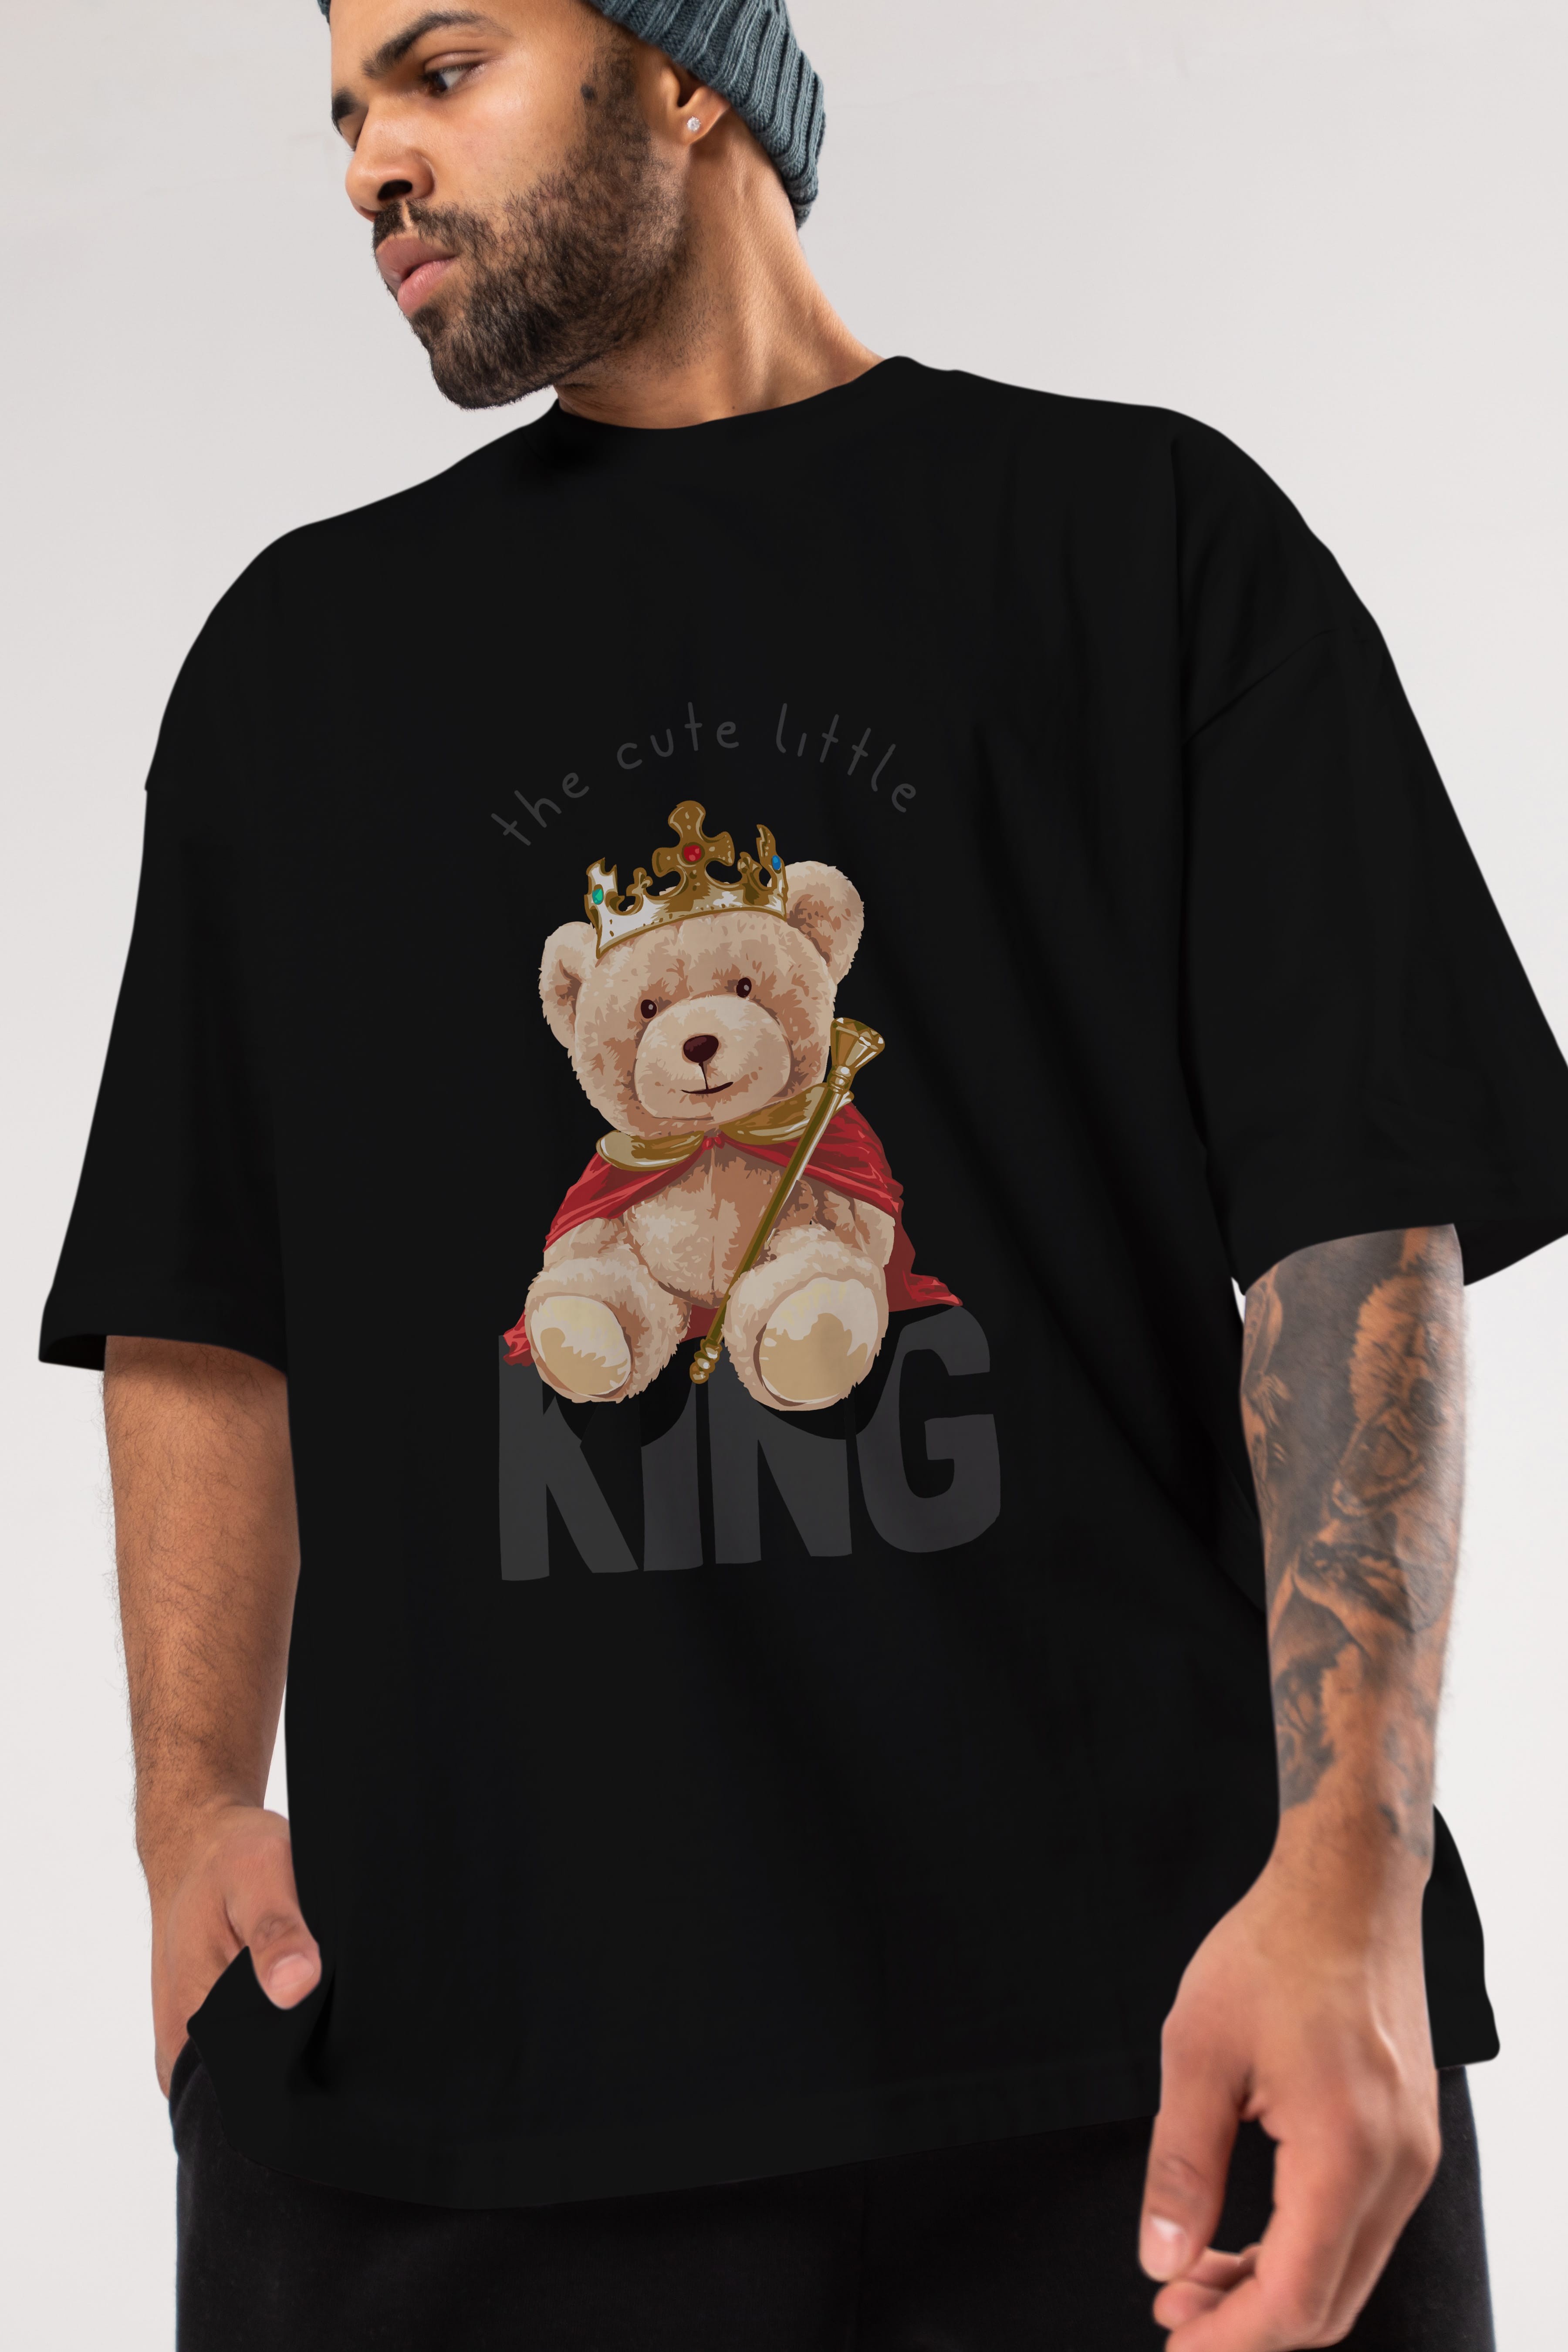 Teddy Bear King Ön Baskılı Oversize t-shirt Erkek Kadın Unisex %100 Pamuk